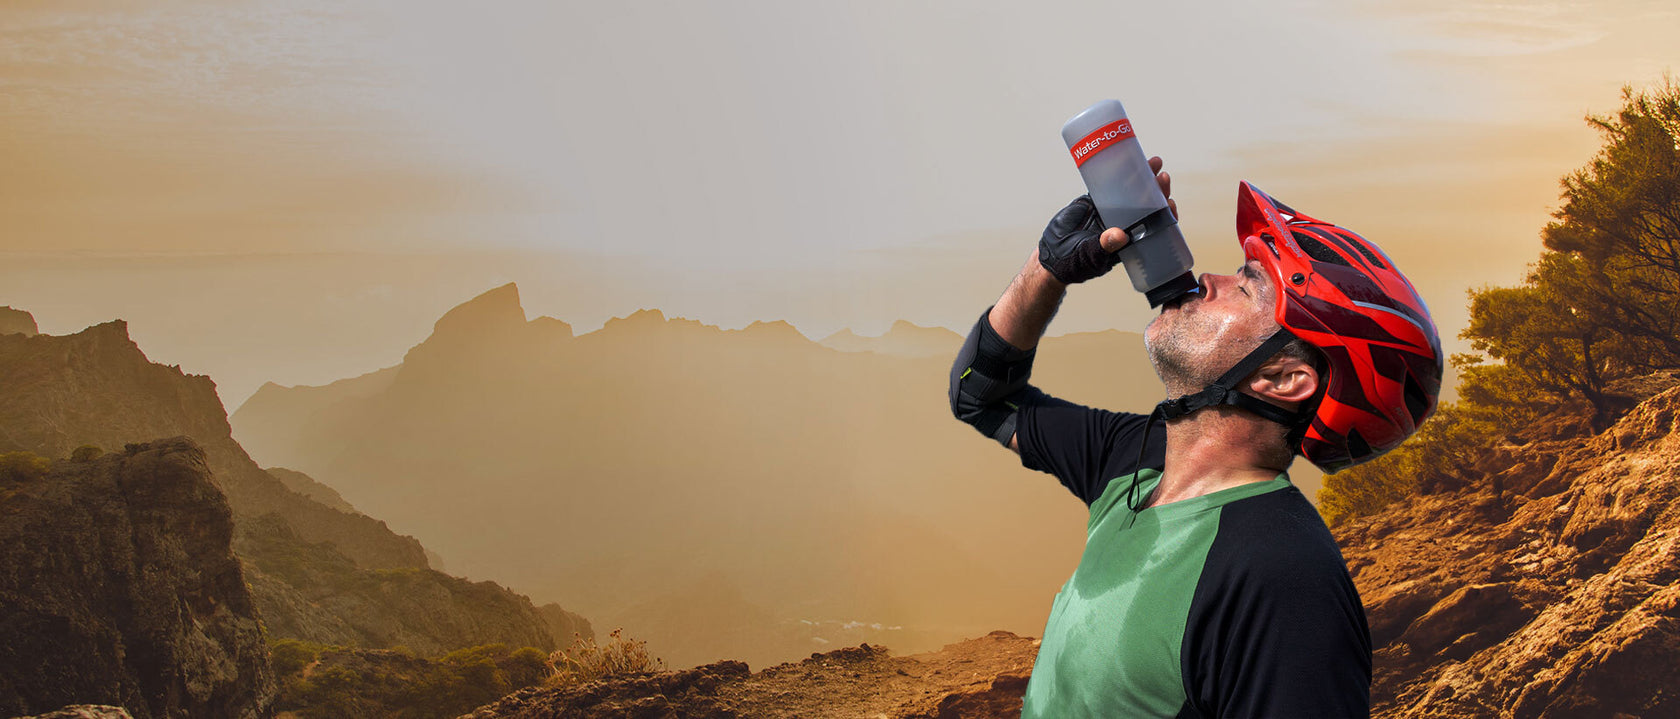 Mountain biker drinking from water filter bottle